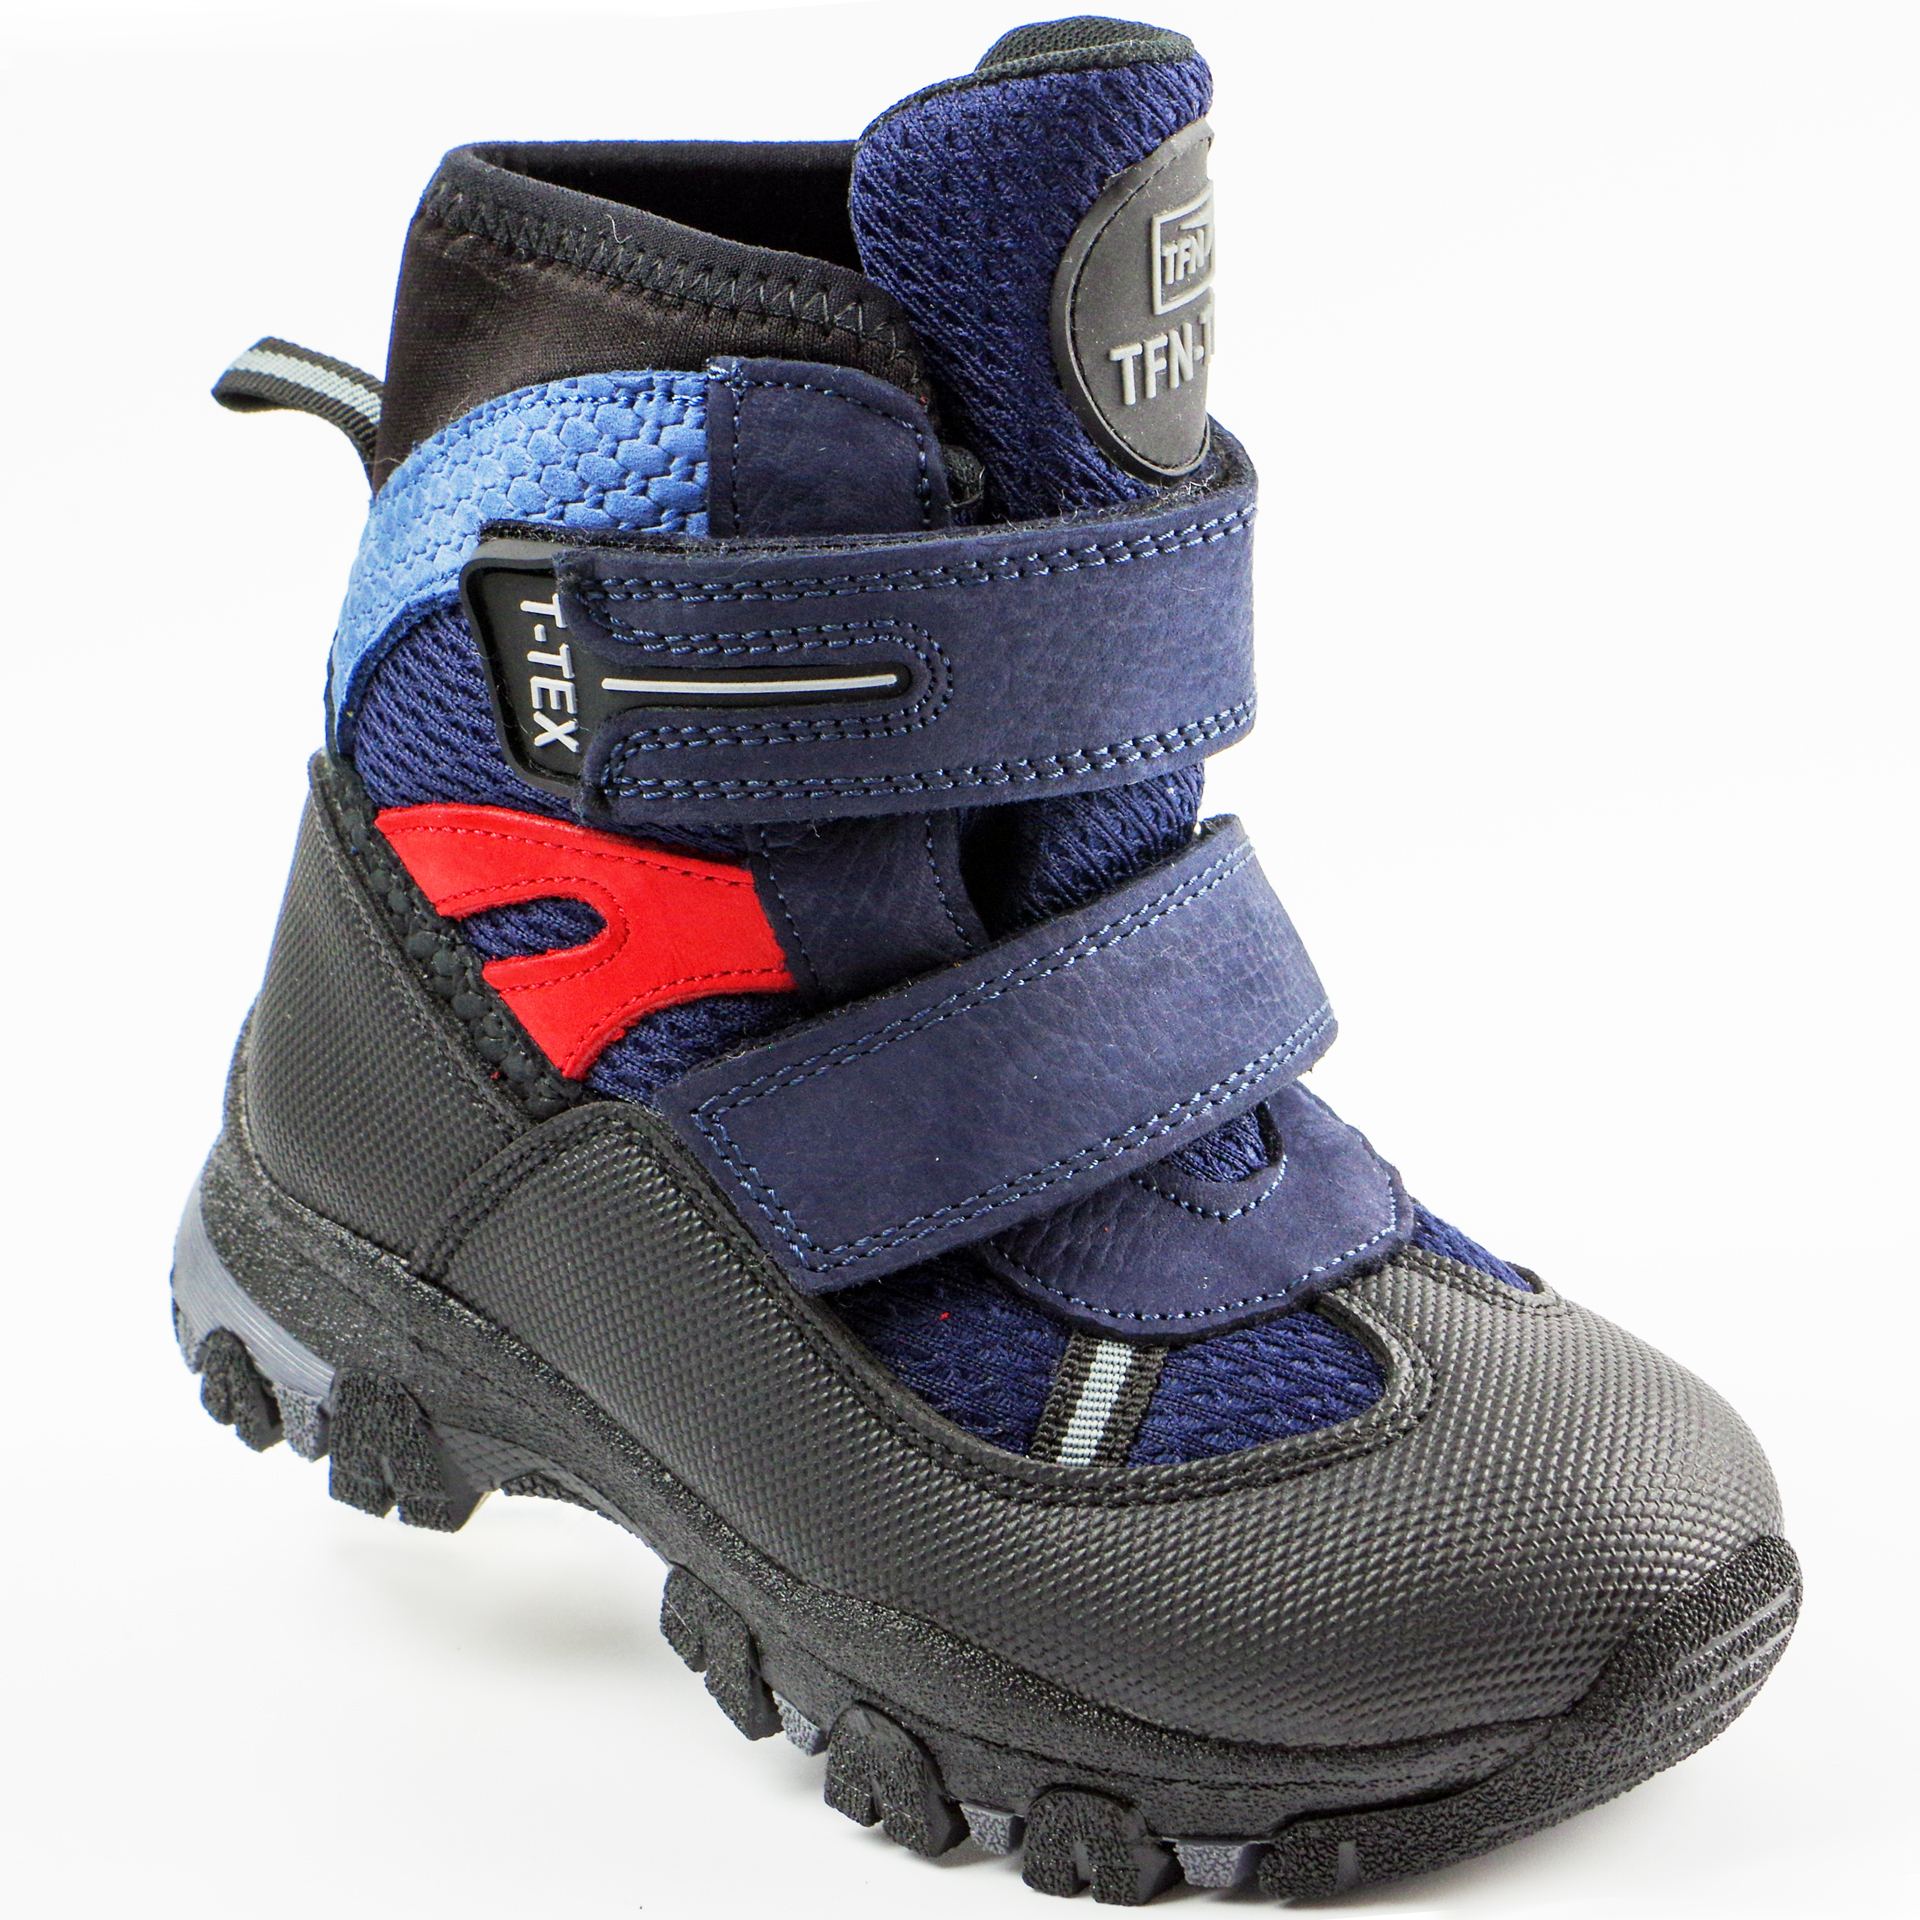 Зимові черевики дитячі (2148) для хлопчика, матеріал Мембрана, Темно-синій колір, 26-30 розміри – Sole Kids. Фото 1